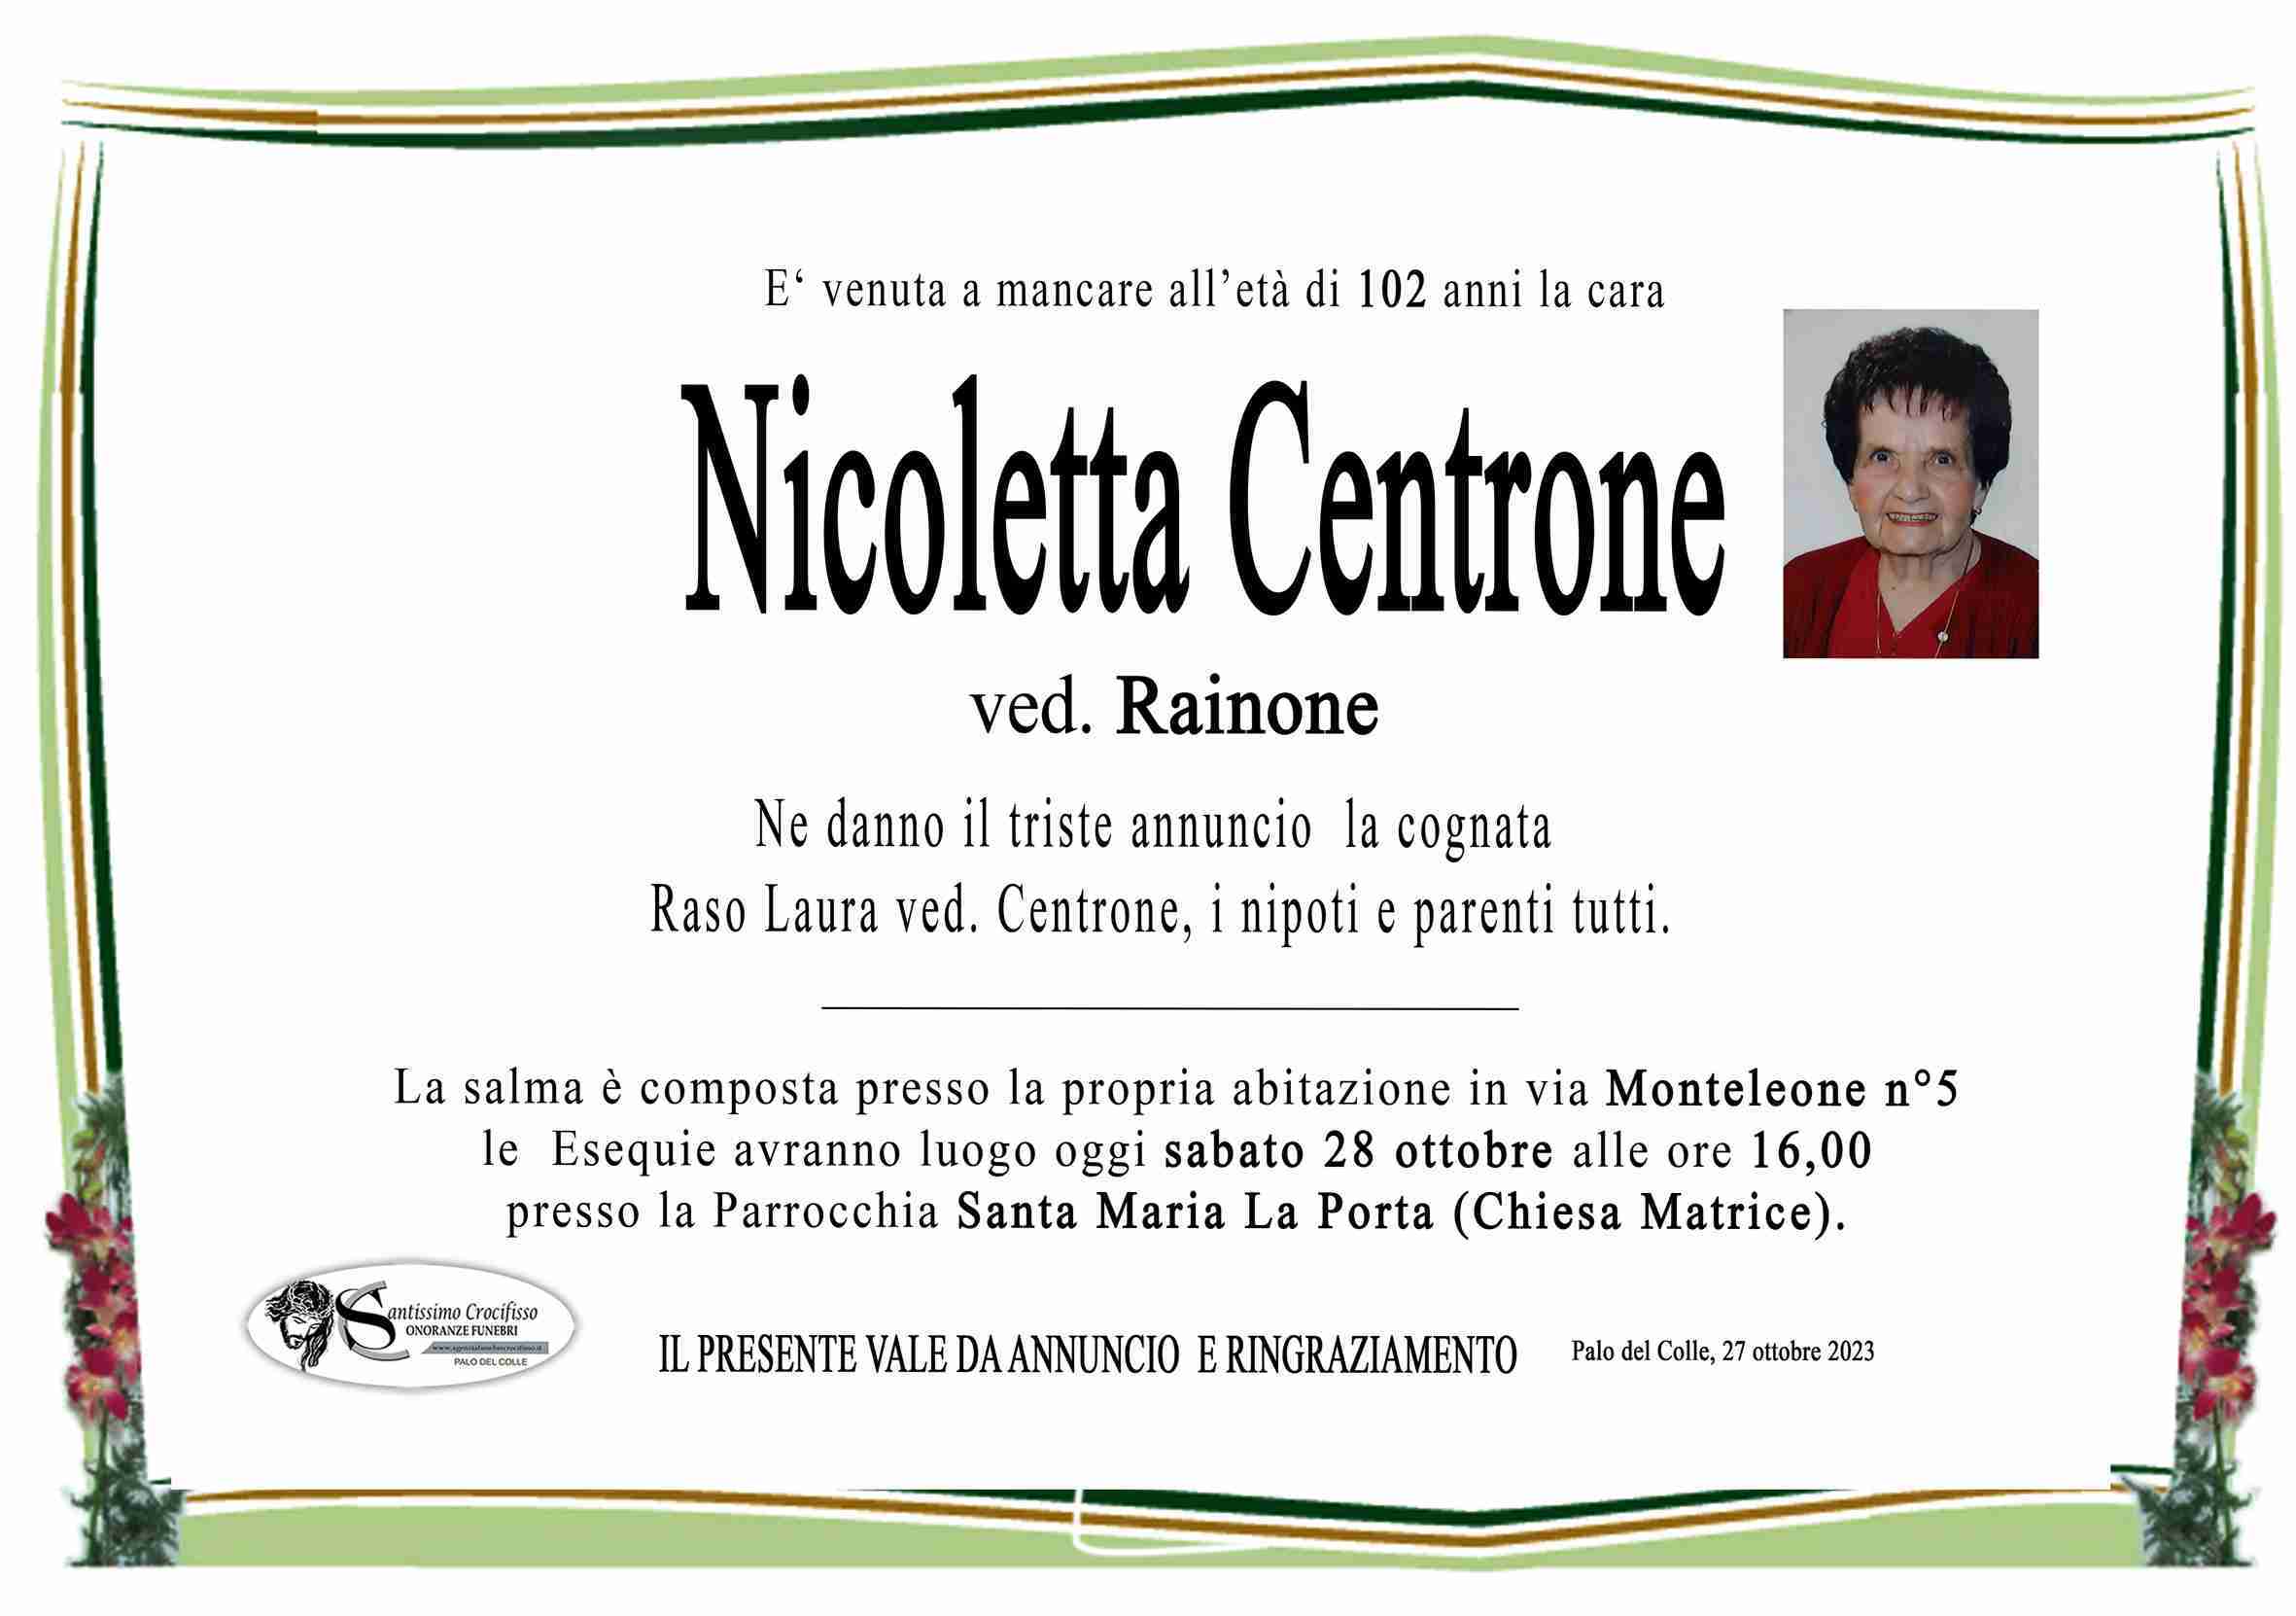 Nicoletta Centrone